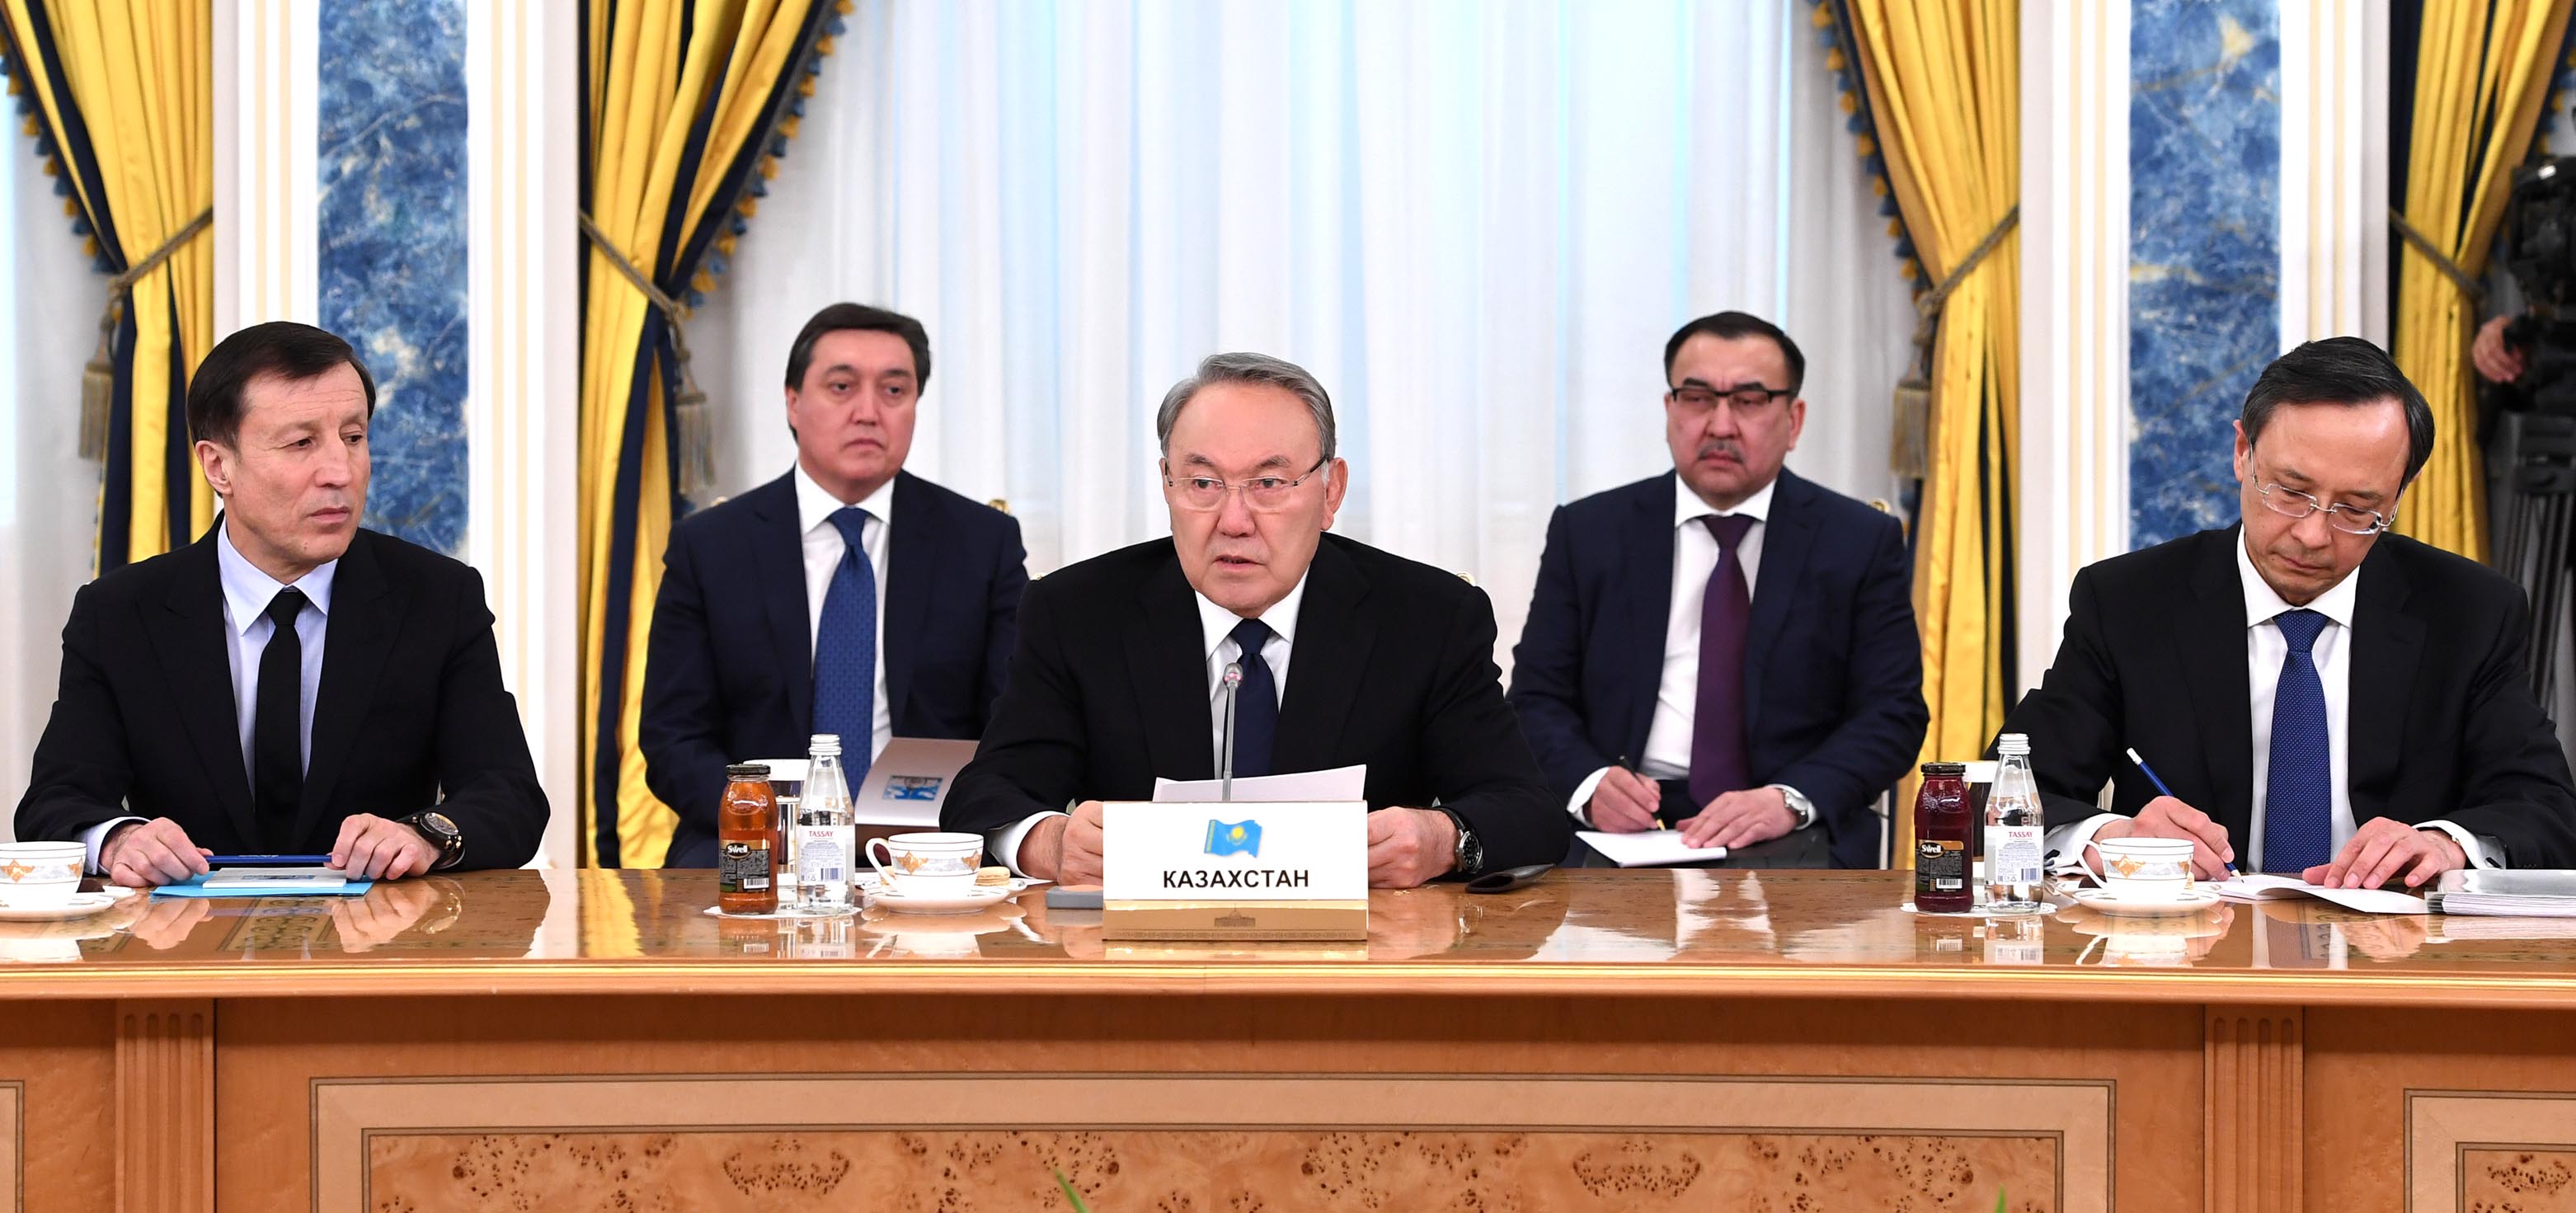 Мемлекет басшысы Орталық Азия елдері басшыларының консультативтік жұмыс кездесуіне қатысты




